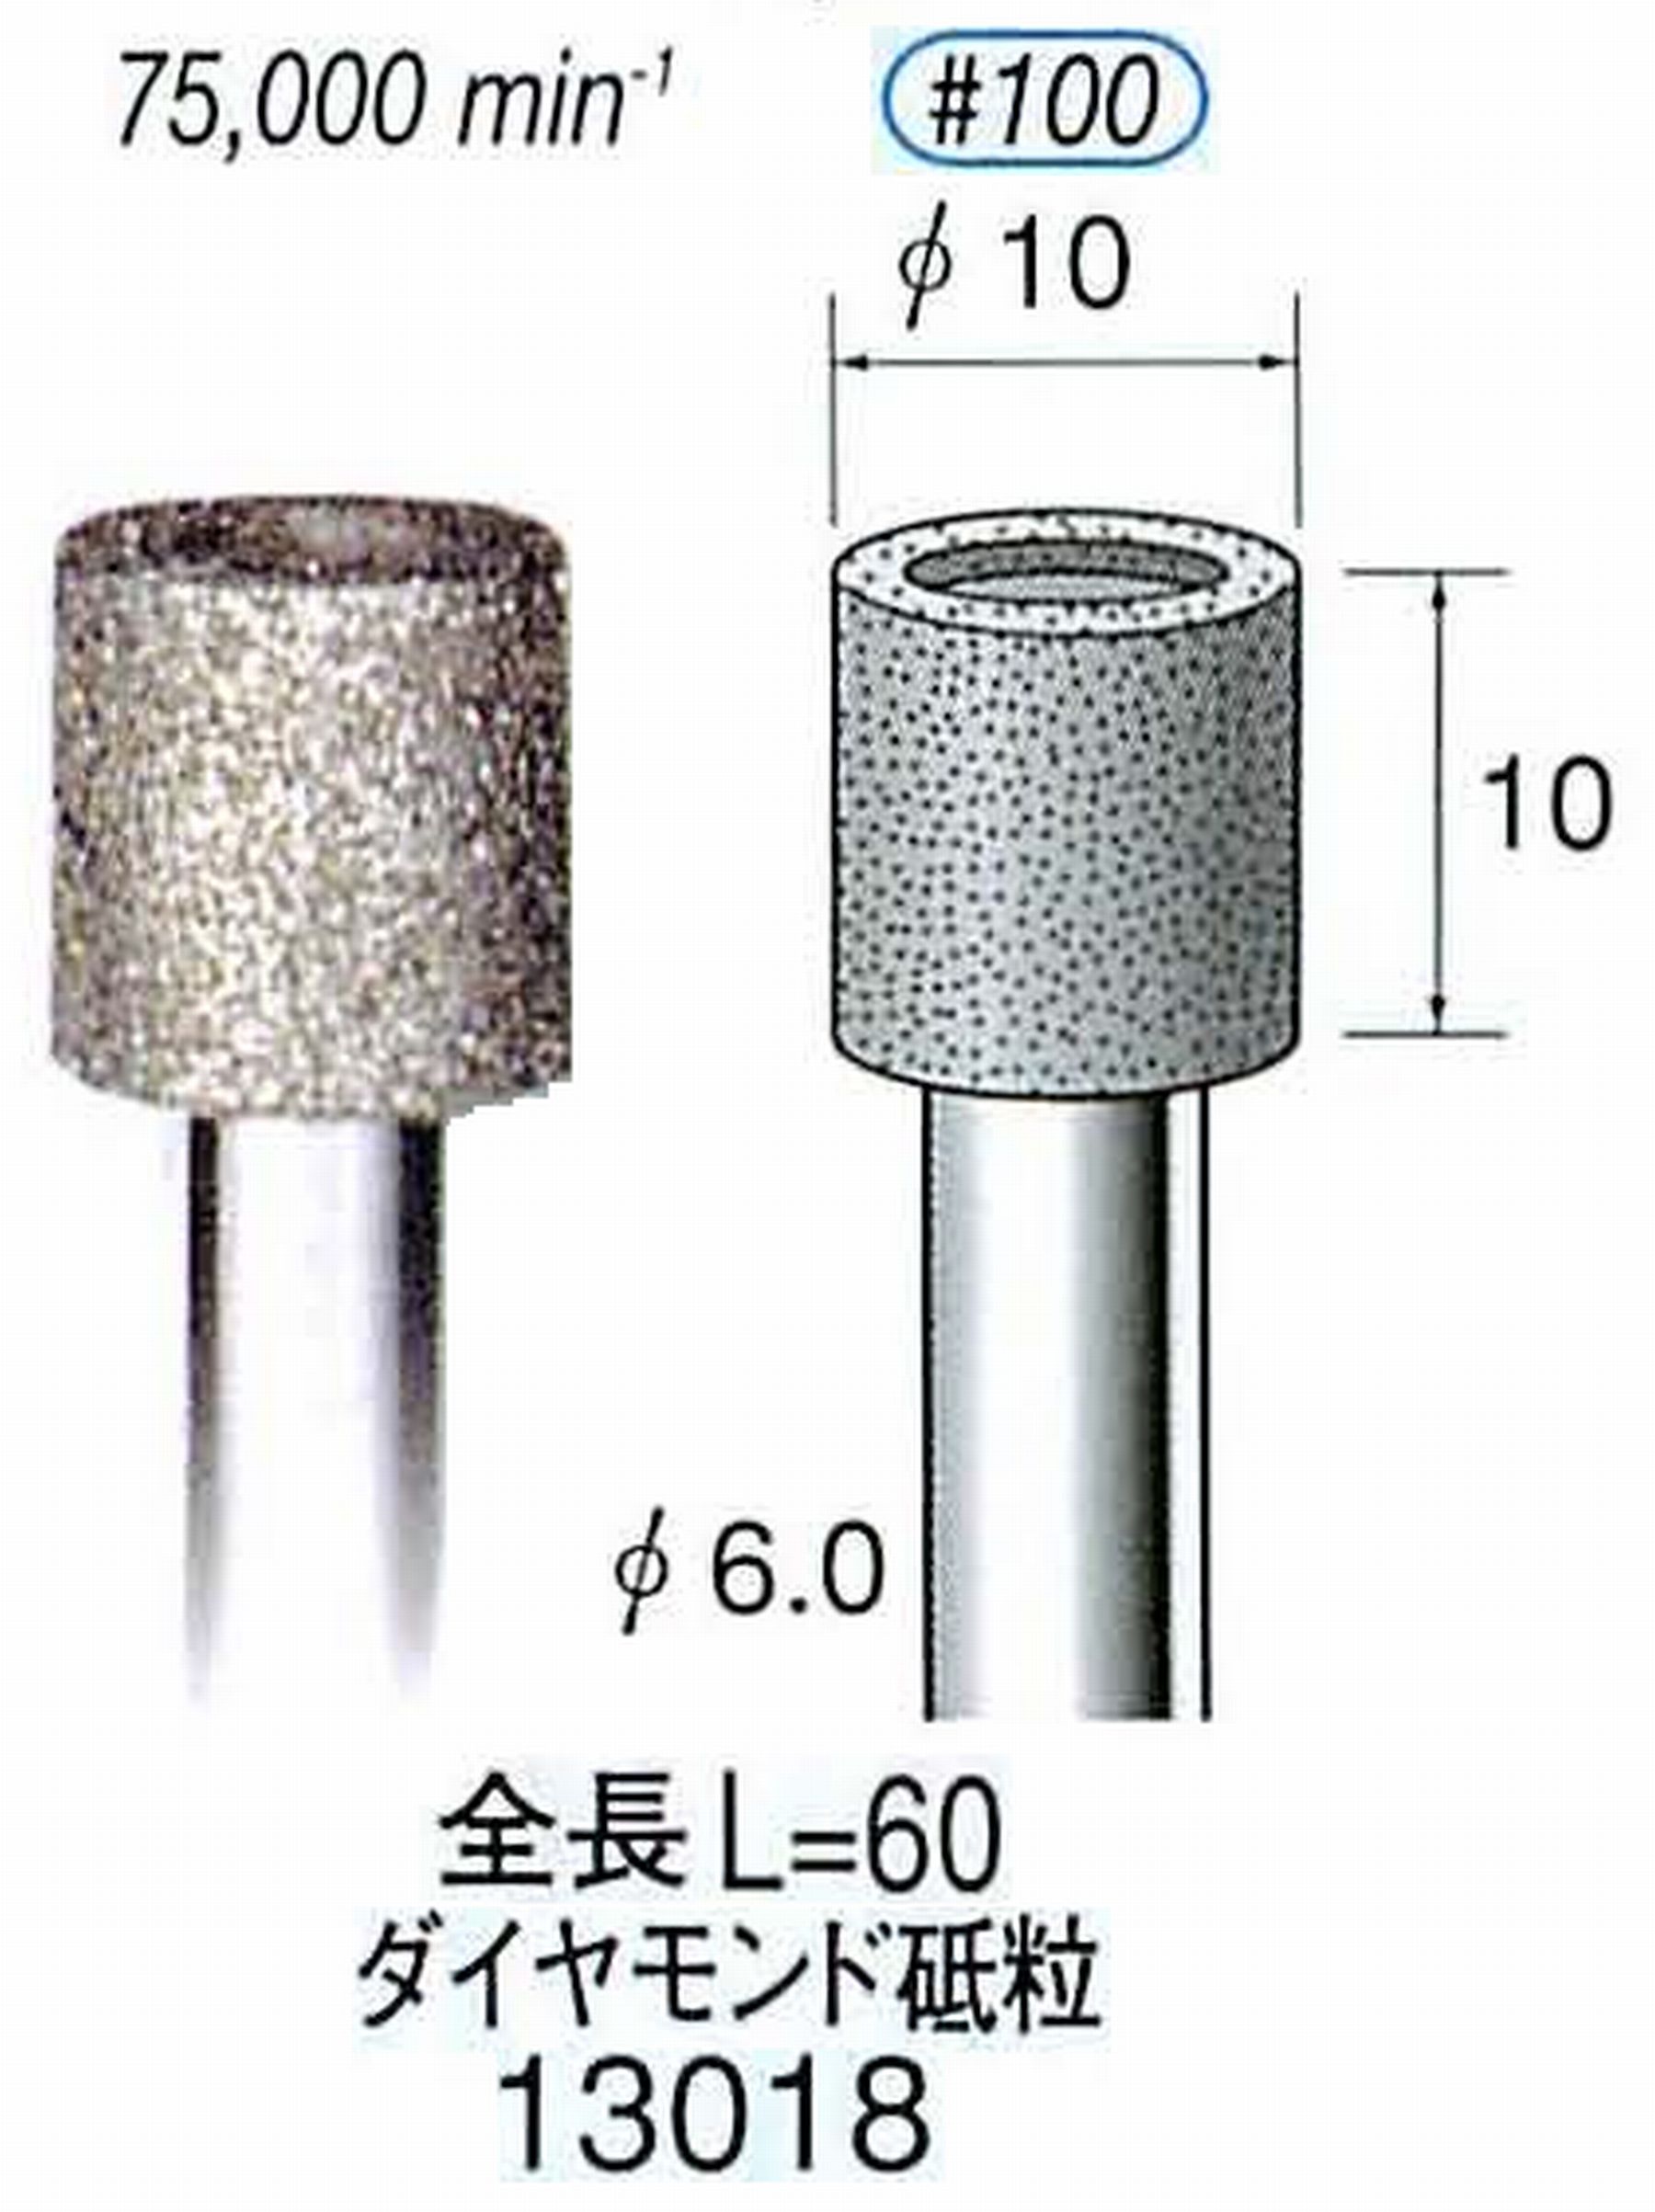 ナカニシ/NAKANISHI 電着ダイヤモンド ダイヤモンド砥粒 軸径(シャンク)φ6.0mm 13018